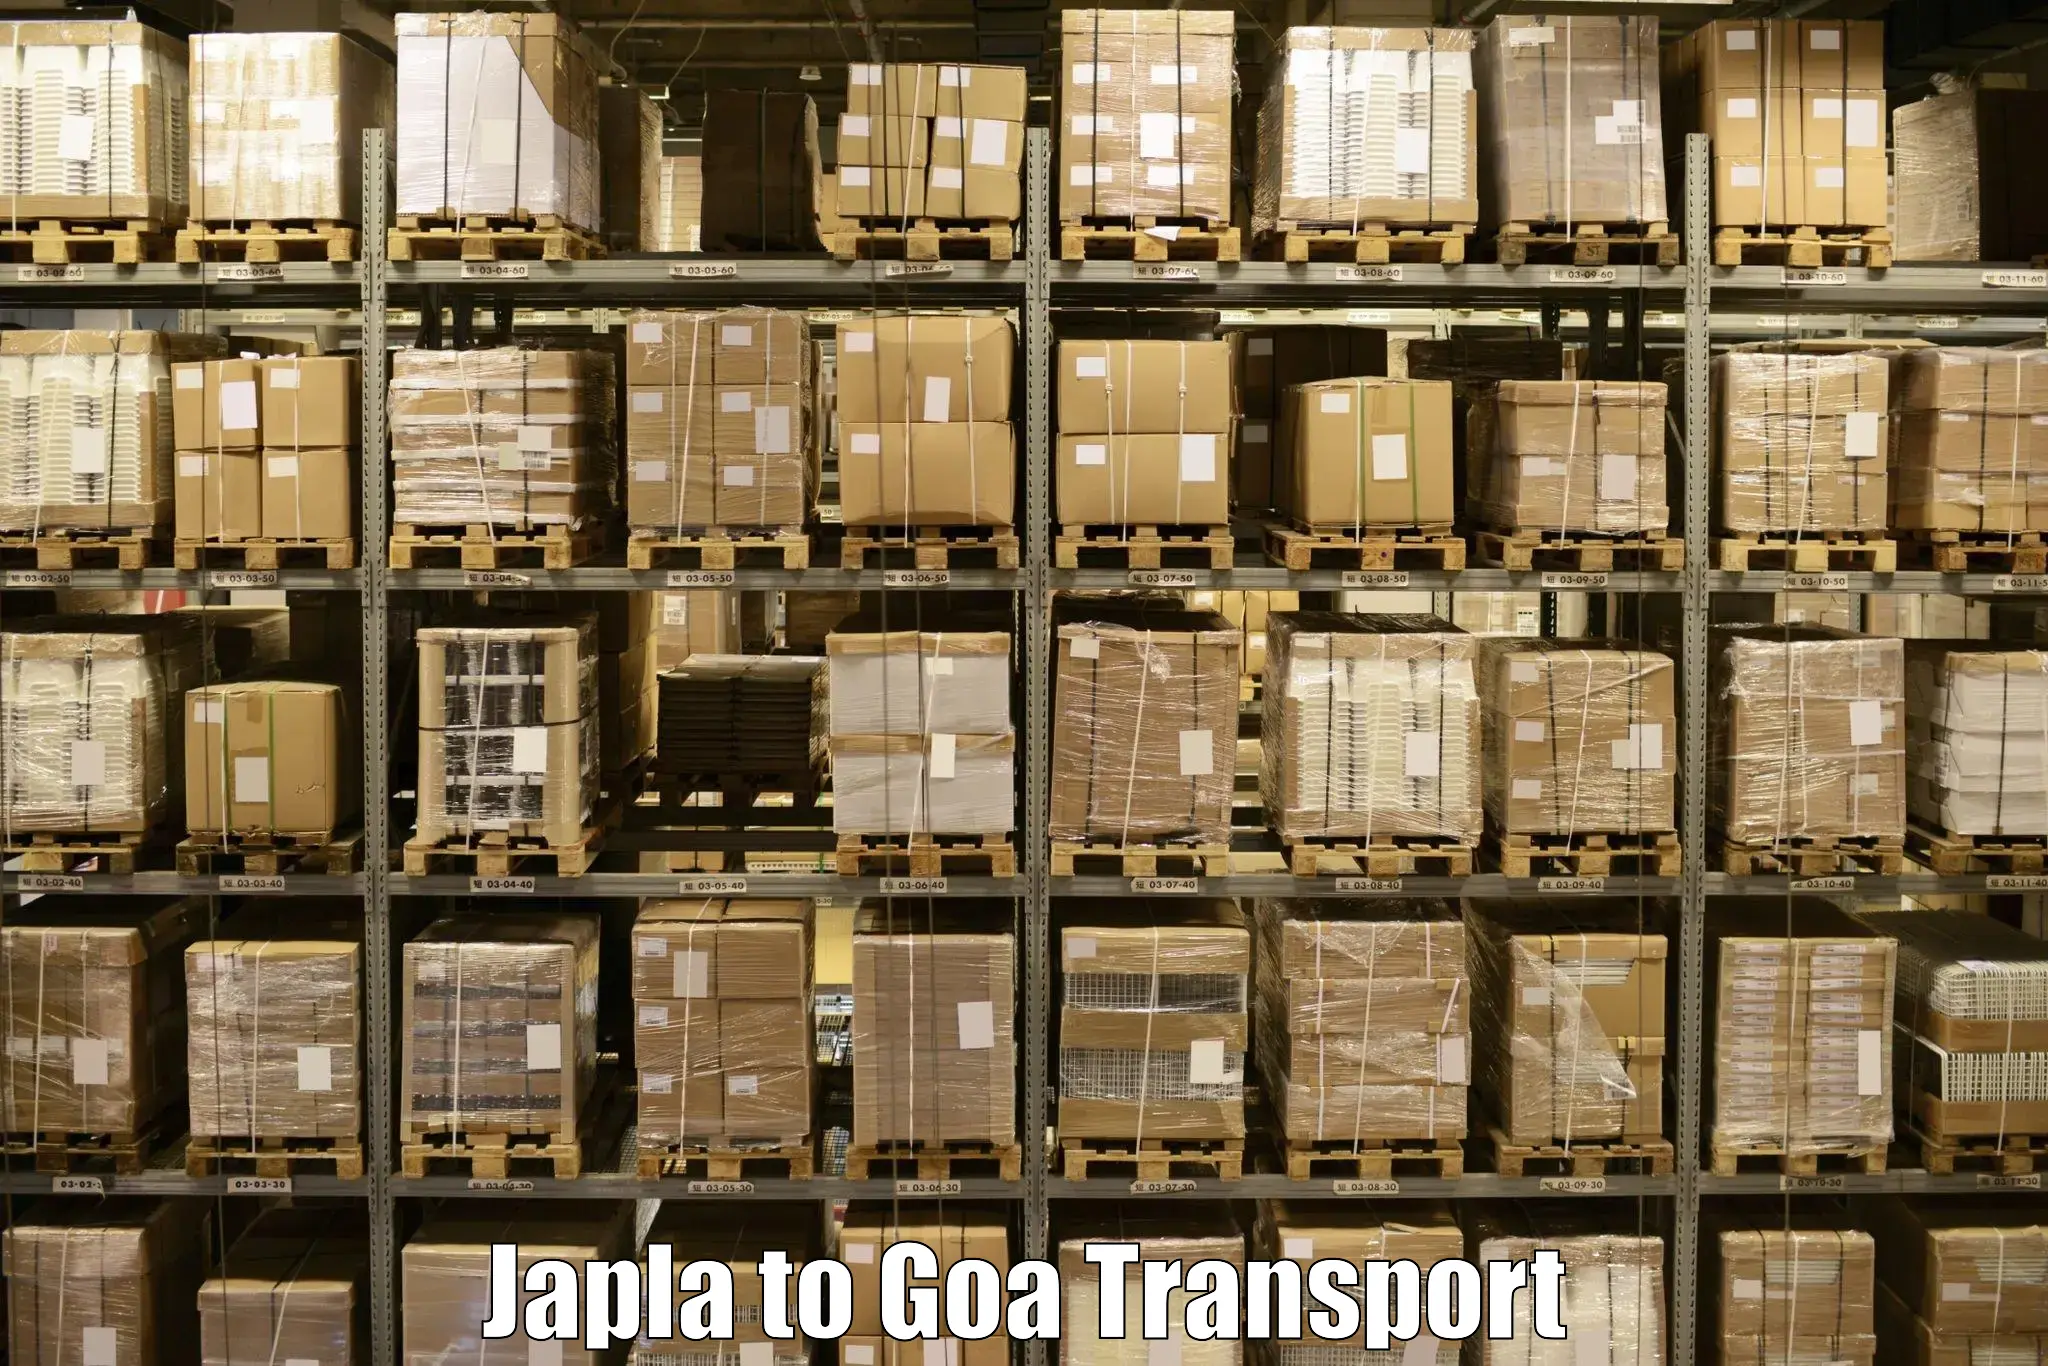 Daily transport service Japla to Bardez